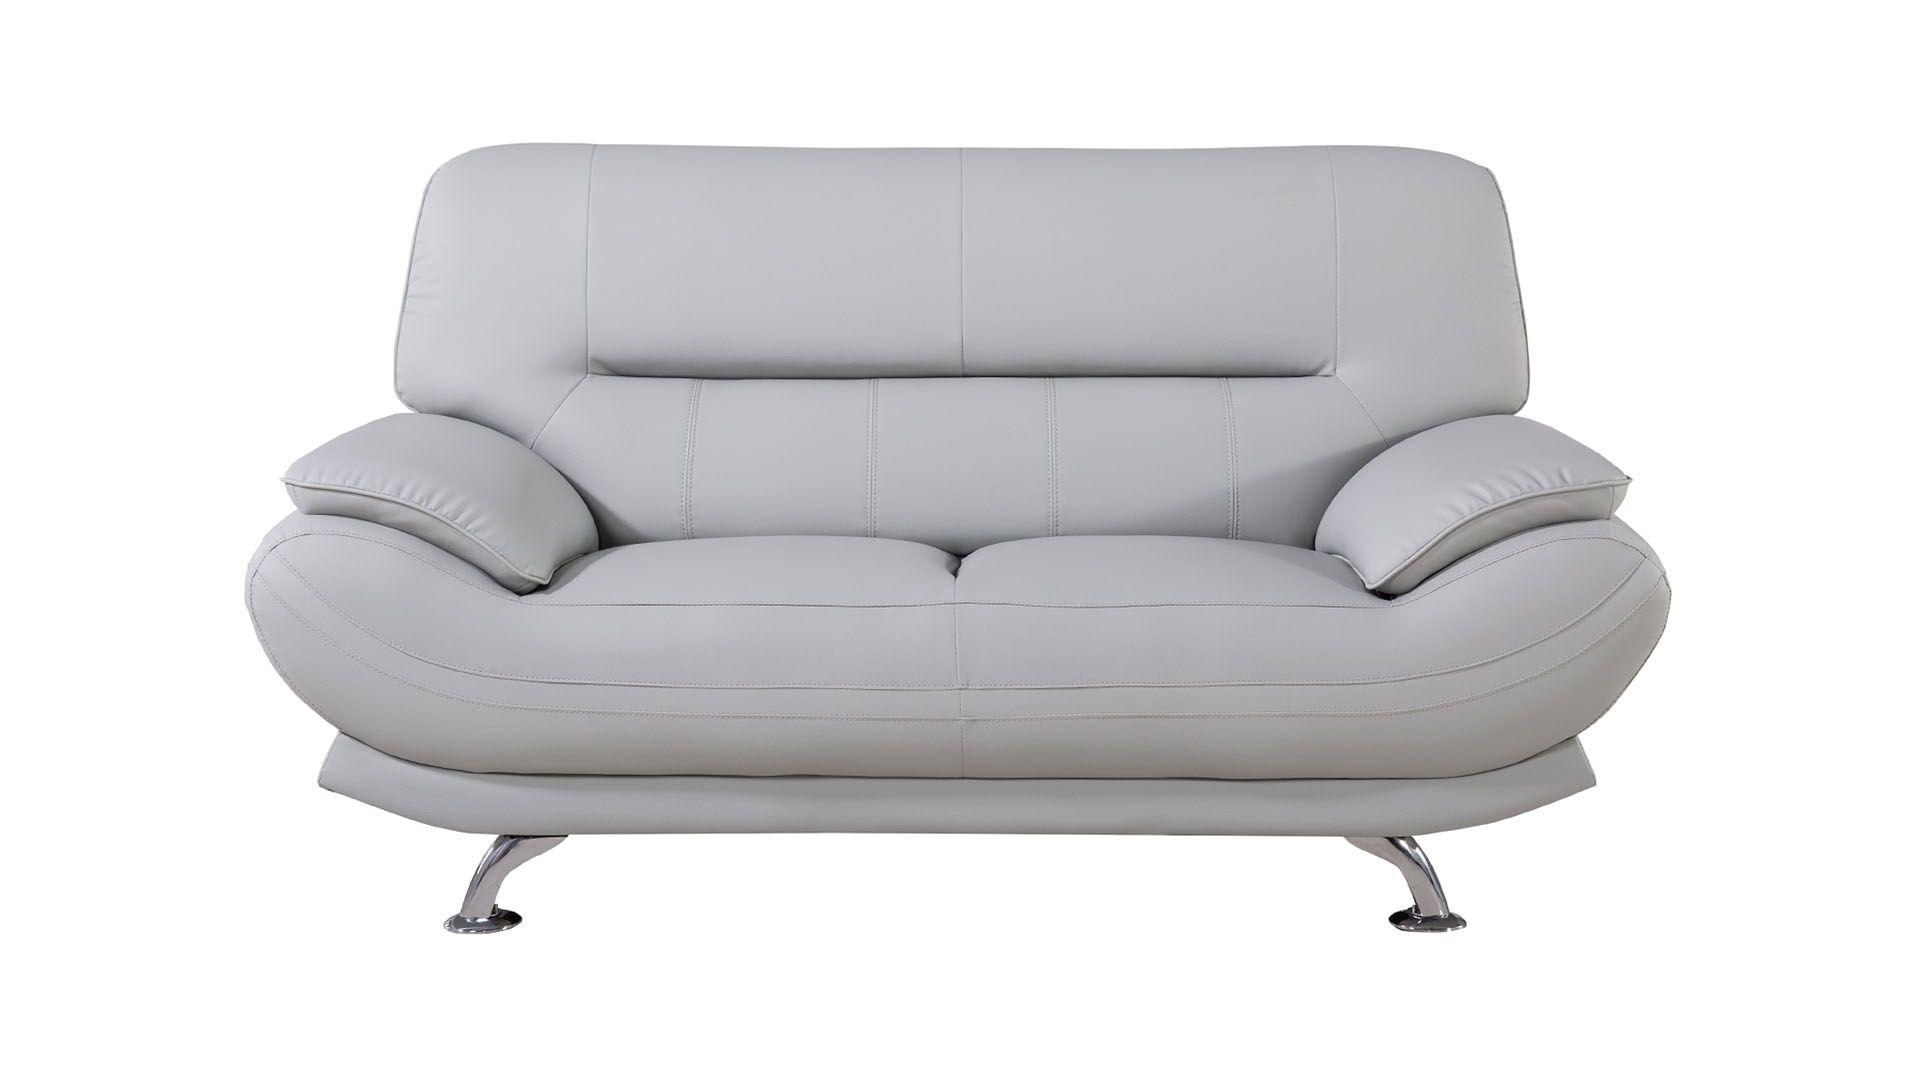 

    
AE709-LG-2PC American Eagle Furniture Sofa Set
